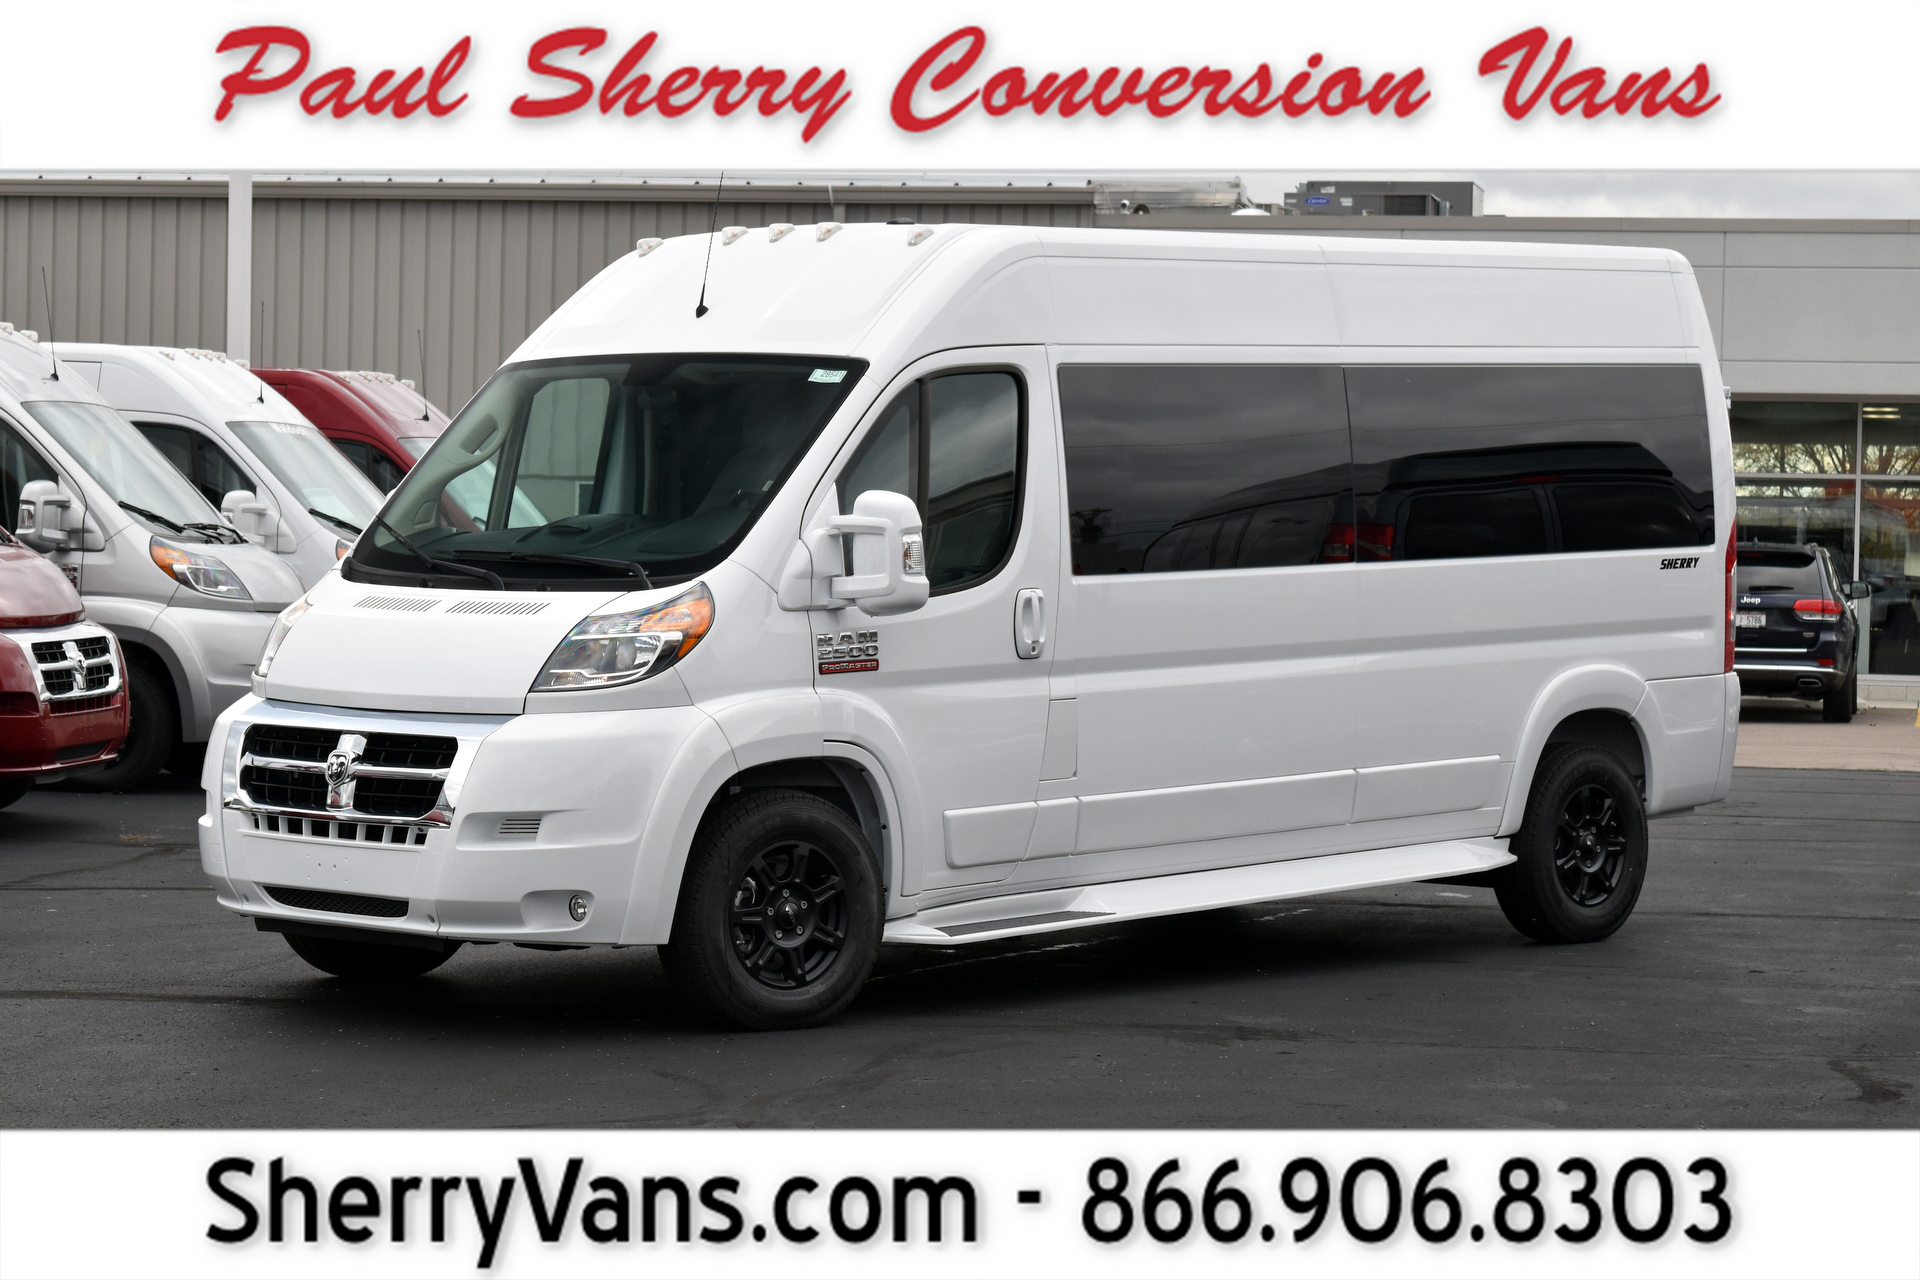 New \u0026 Used Conversion Van Pricing Guide 